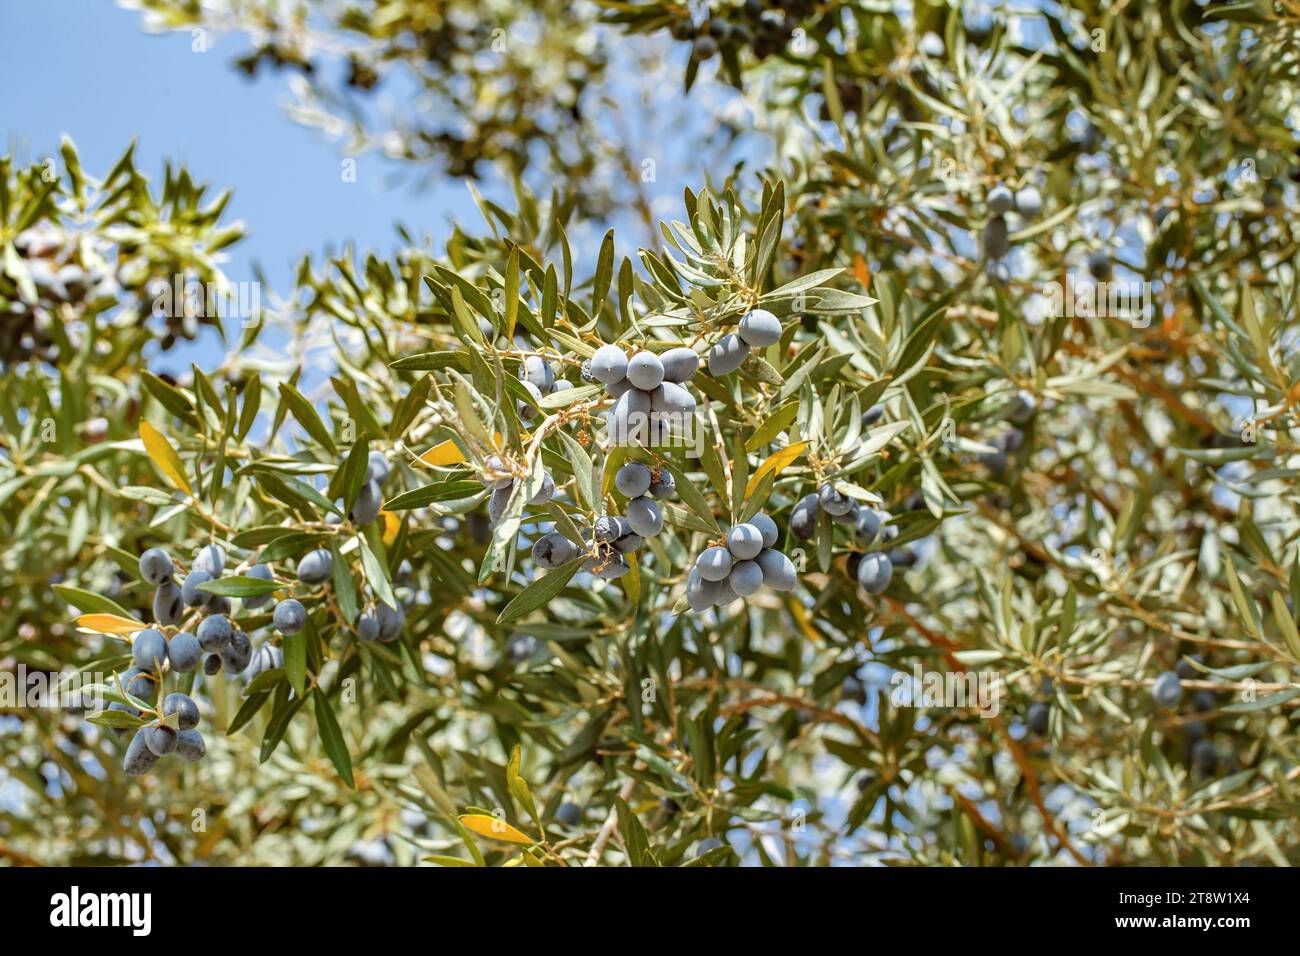 Le olive nere maturano sui rami dell'albero tra foglie verdi, l'oliva europea Foto Stock